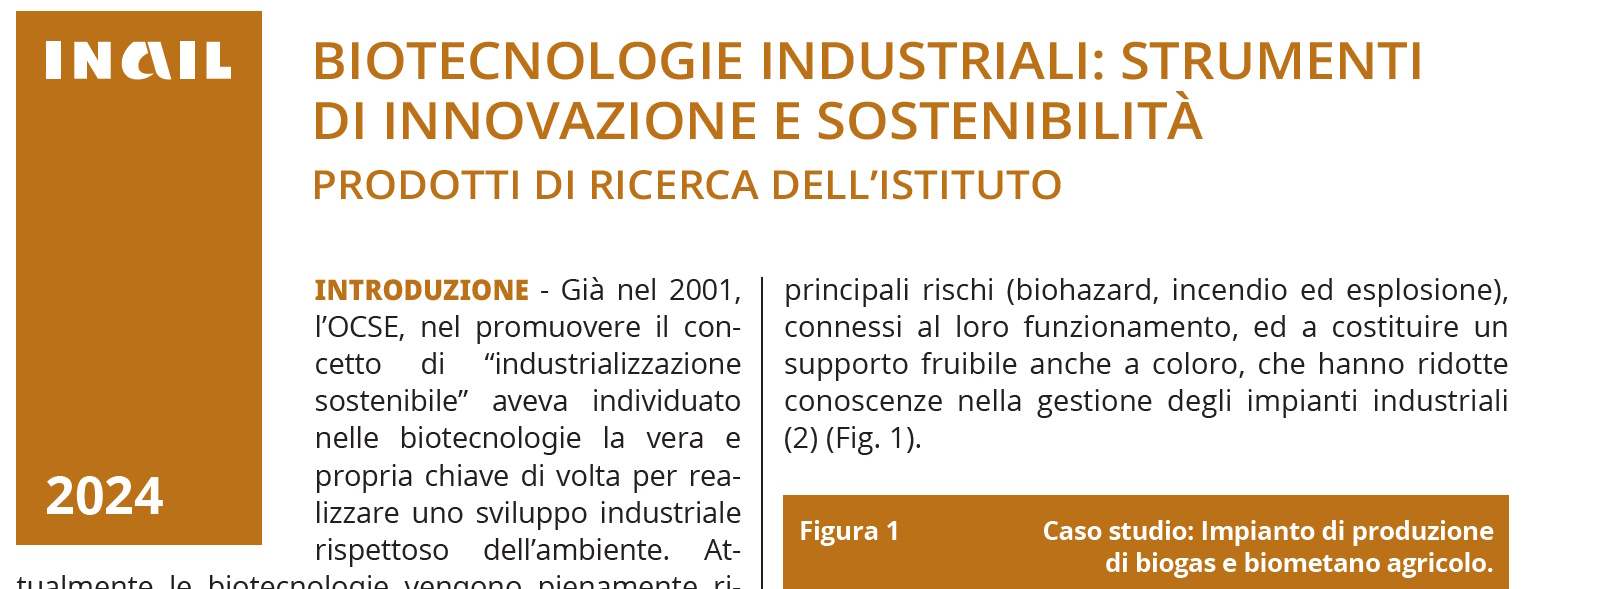 Biotecnologie industriali innovazione e sostenibilità. strumenti di innovazione e sostenibilità. Prodotti di ricerca dell'Istituto. INAIL 2024